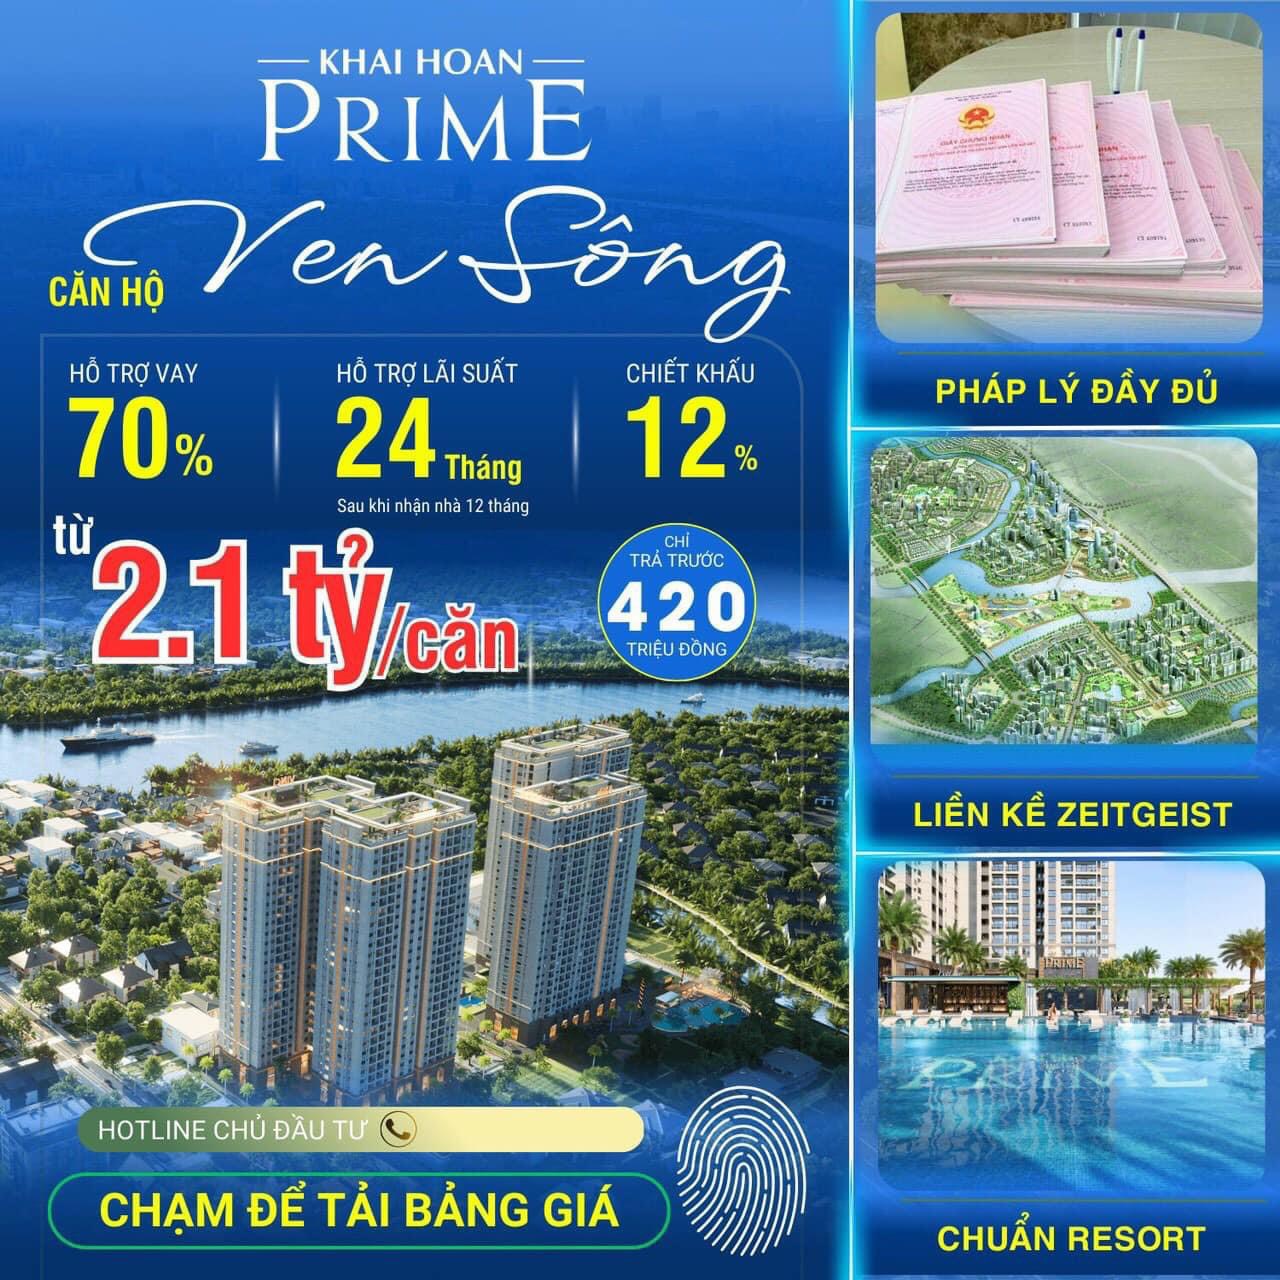 Bán căn Hộ Khải Hoàn Prime liền kề khu đô thị Phú Mỹ Hưng Quận 7 giá 2.1 tỷ - Ảnh 1